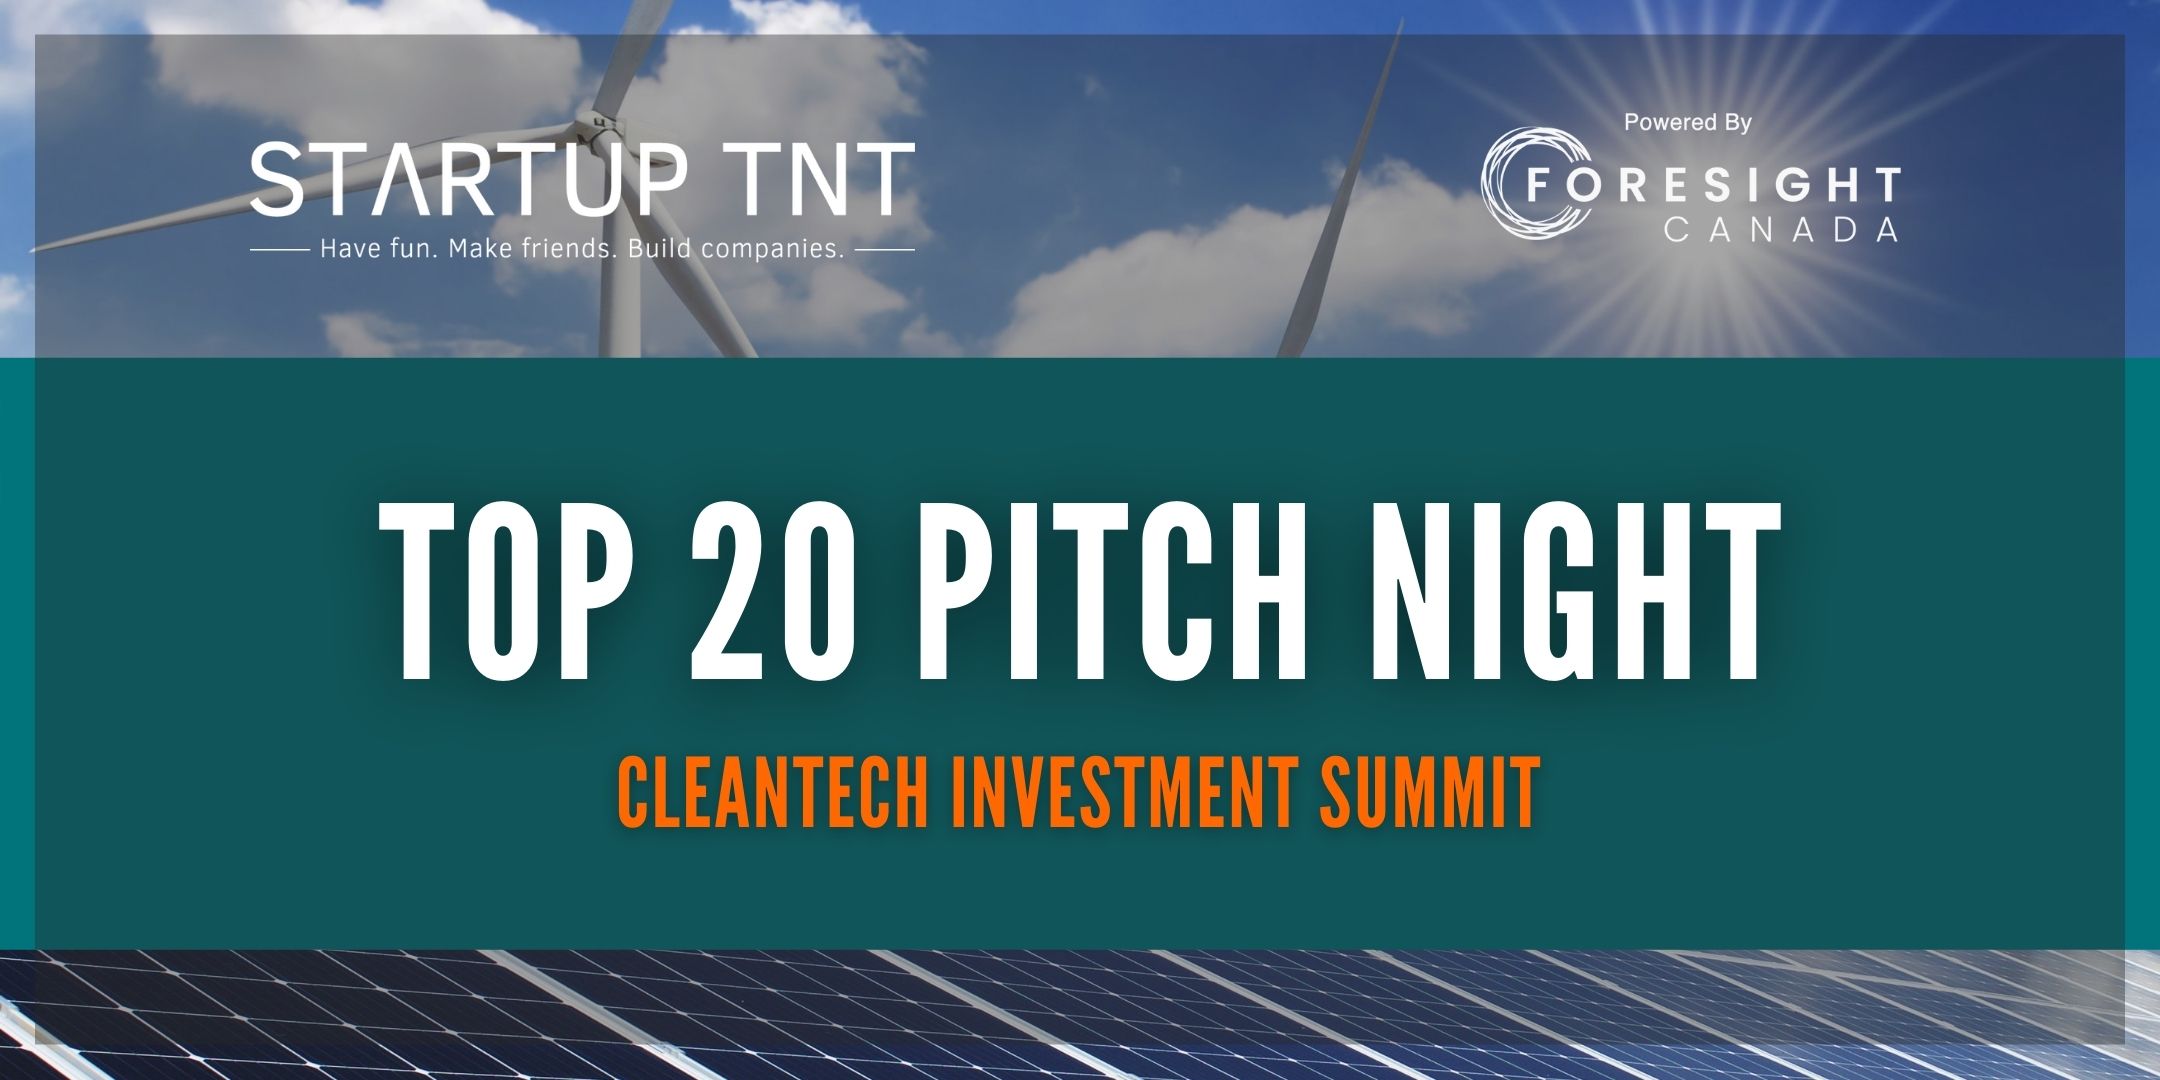 Top 20 Pitch Night Cleanteach Summit 2022 Eventbrite Banner